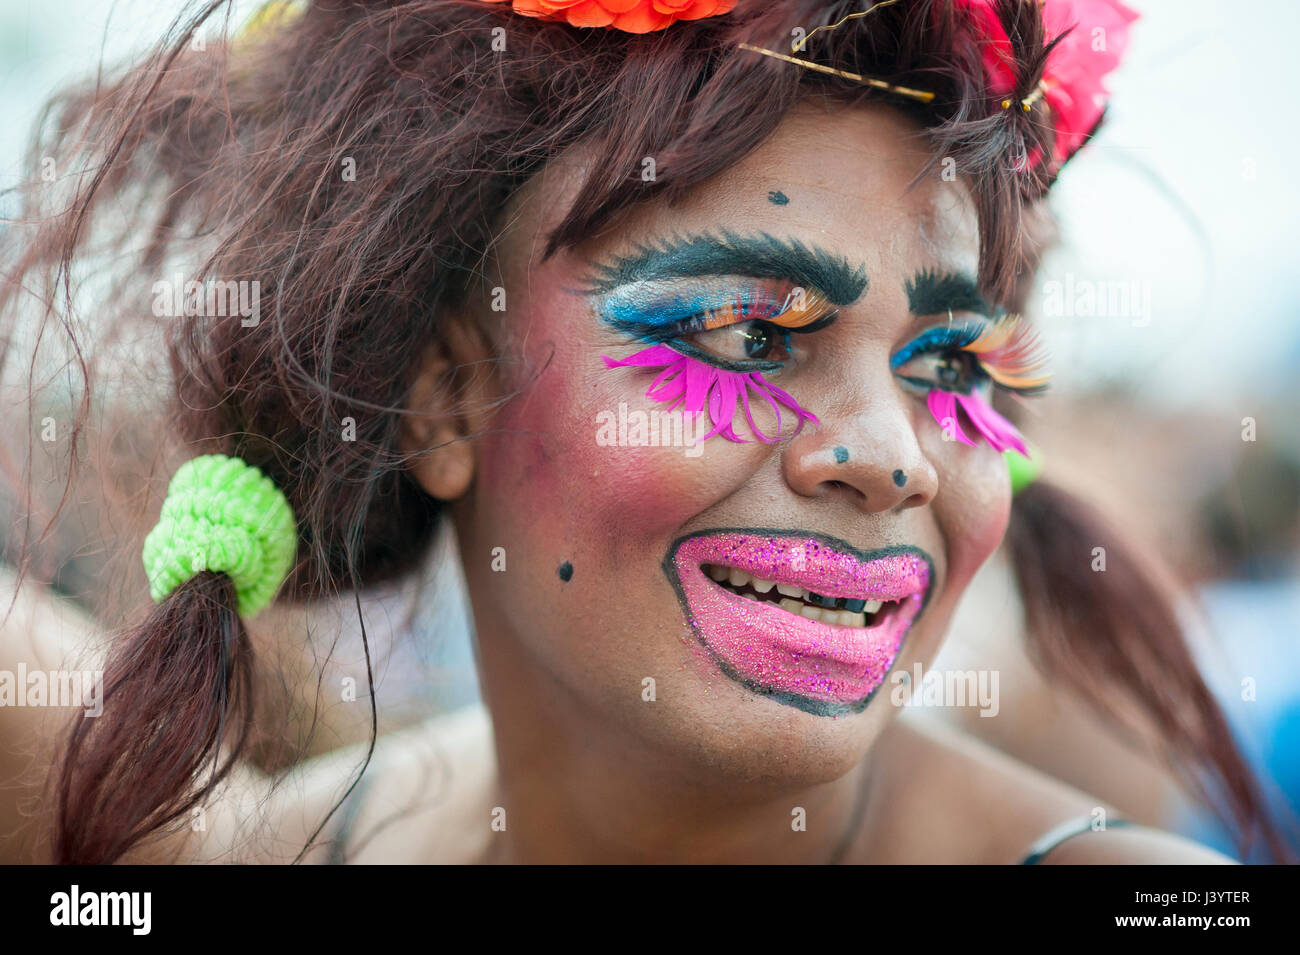 RIO DE JANEIRO - Febrero 11, 2017: Un joven brasileño celebra el carnaval  con colores brillantes de maquillaje y una peluca despeinada en una fiesta  en la calle en Ipanema Fotografía de stock - Alamy